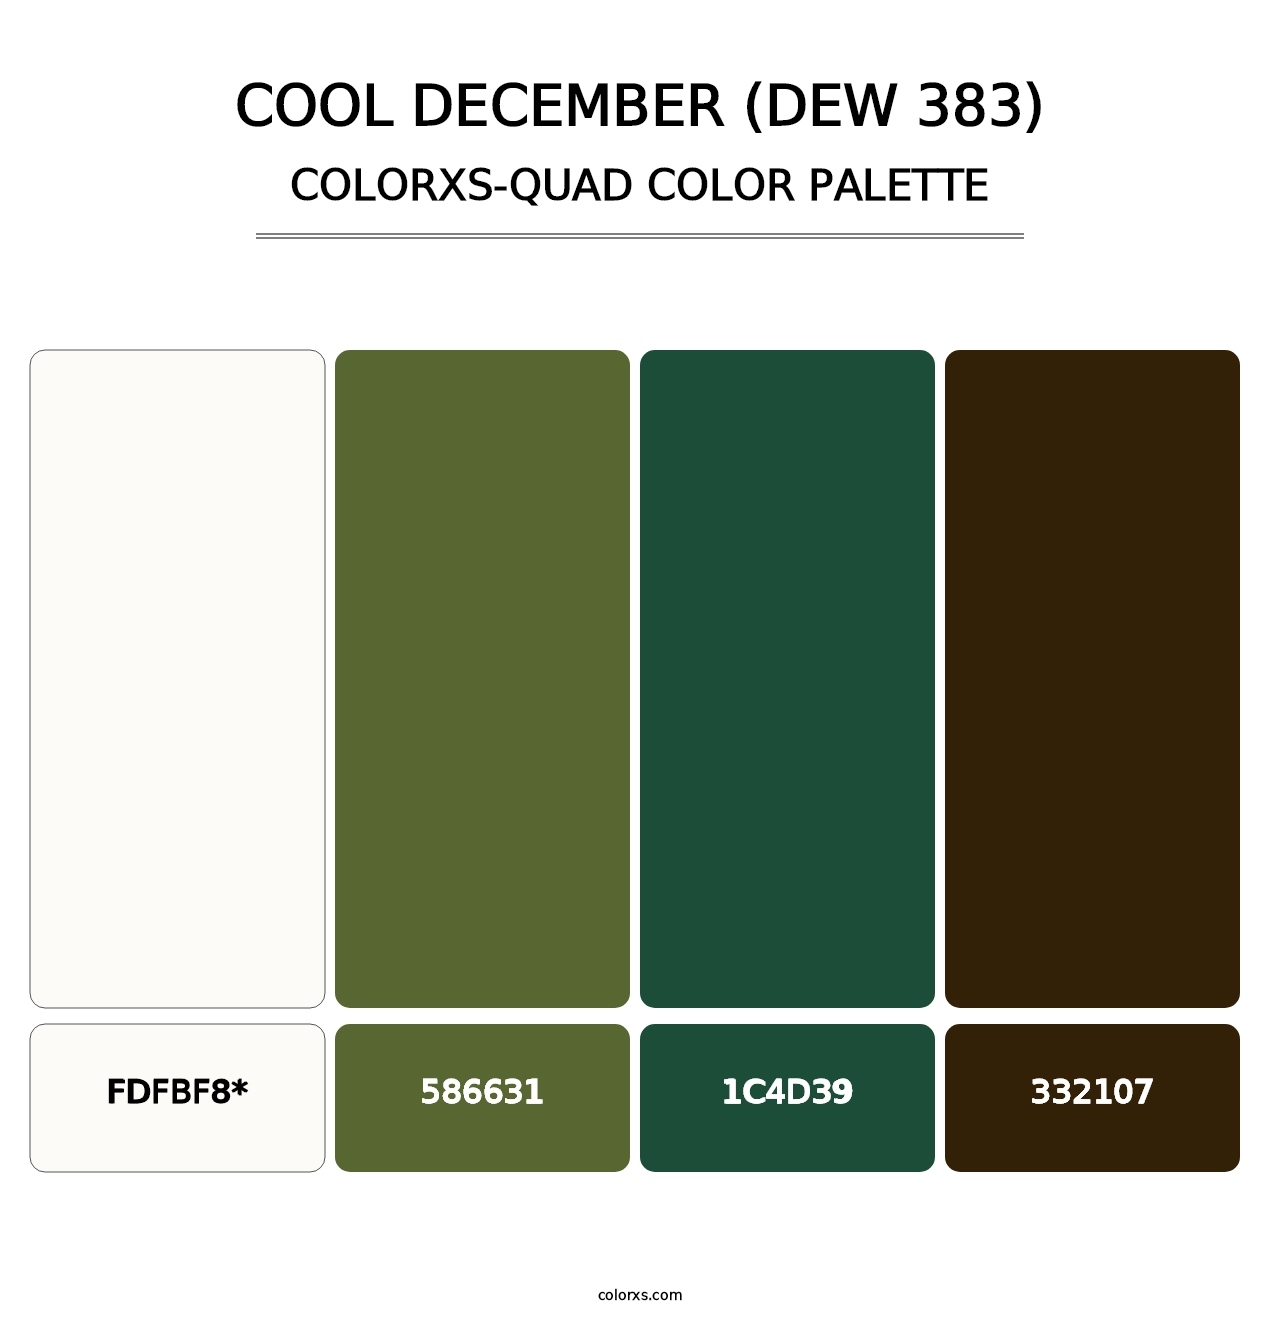 Cool December (DEW 383) - Colorxs Quad Palette